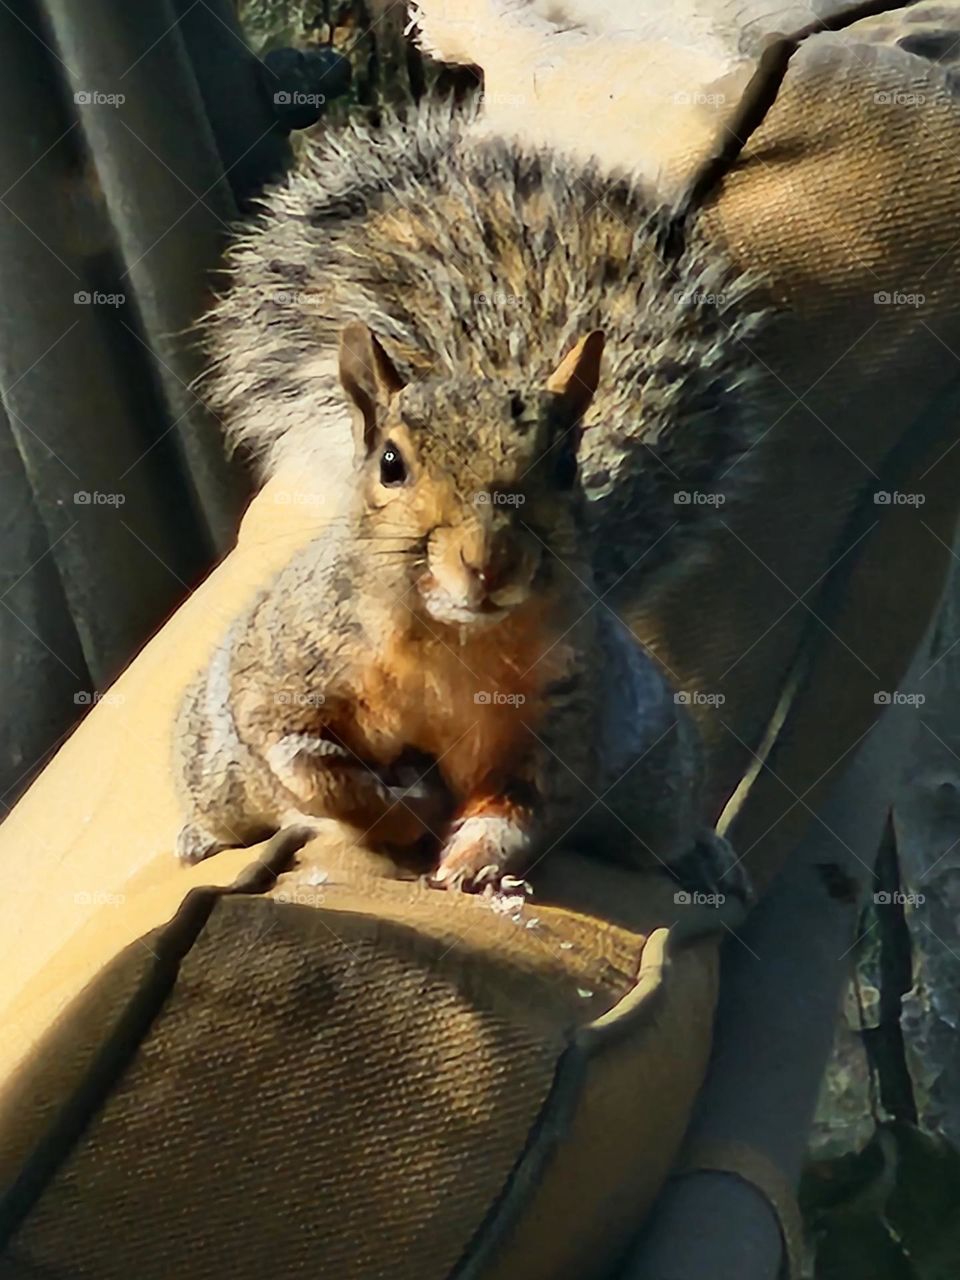 Squirrel friend